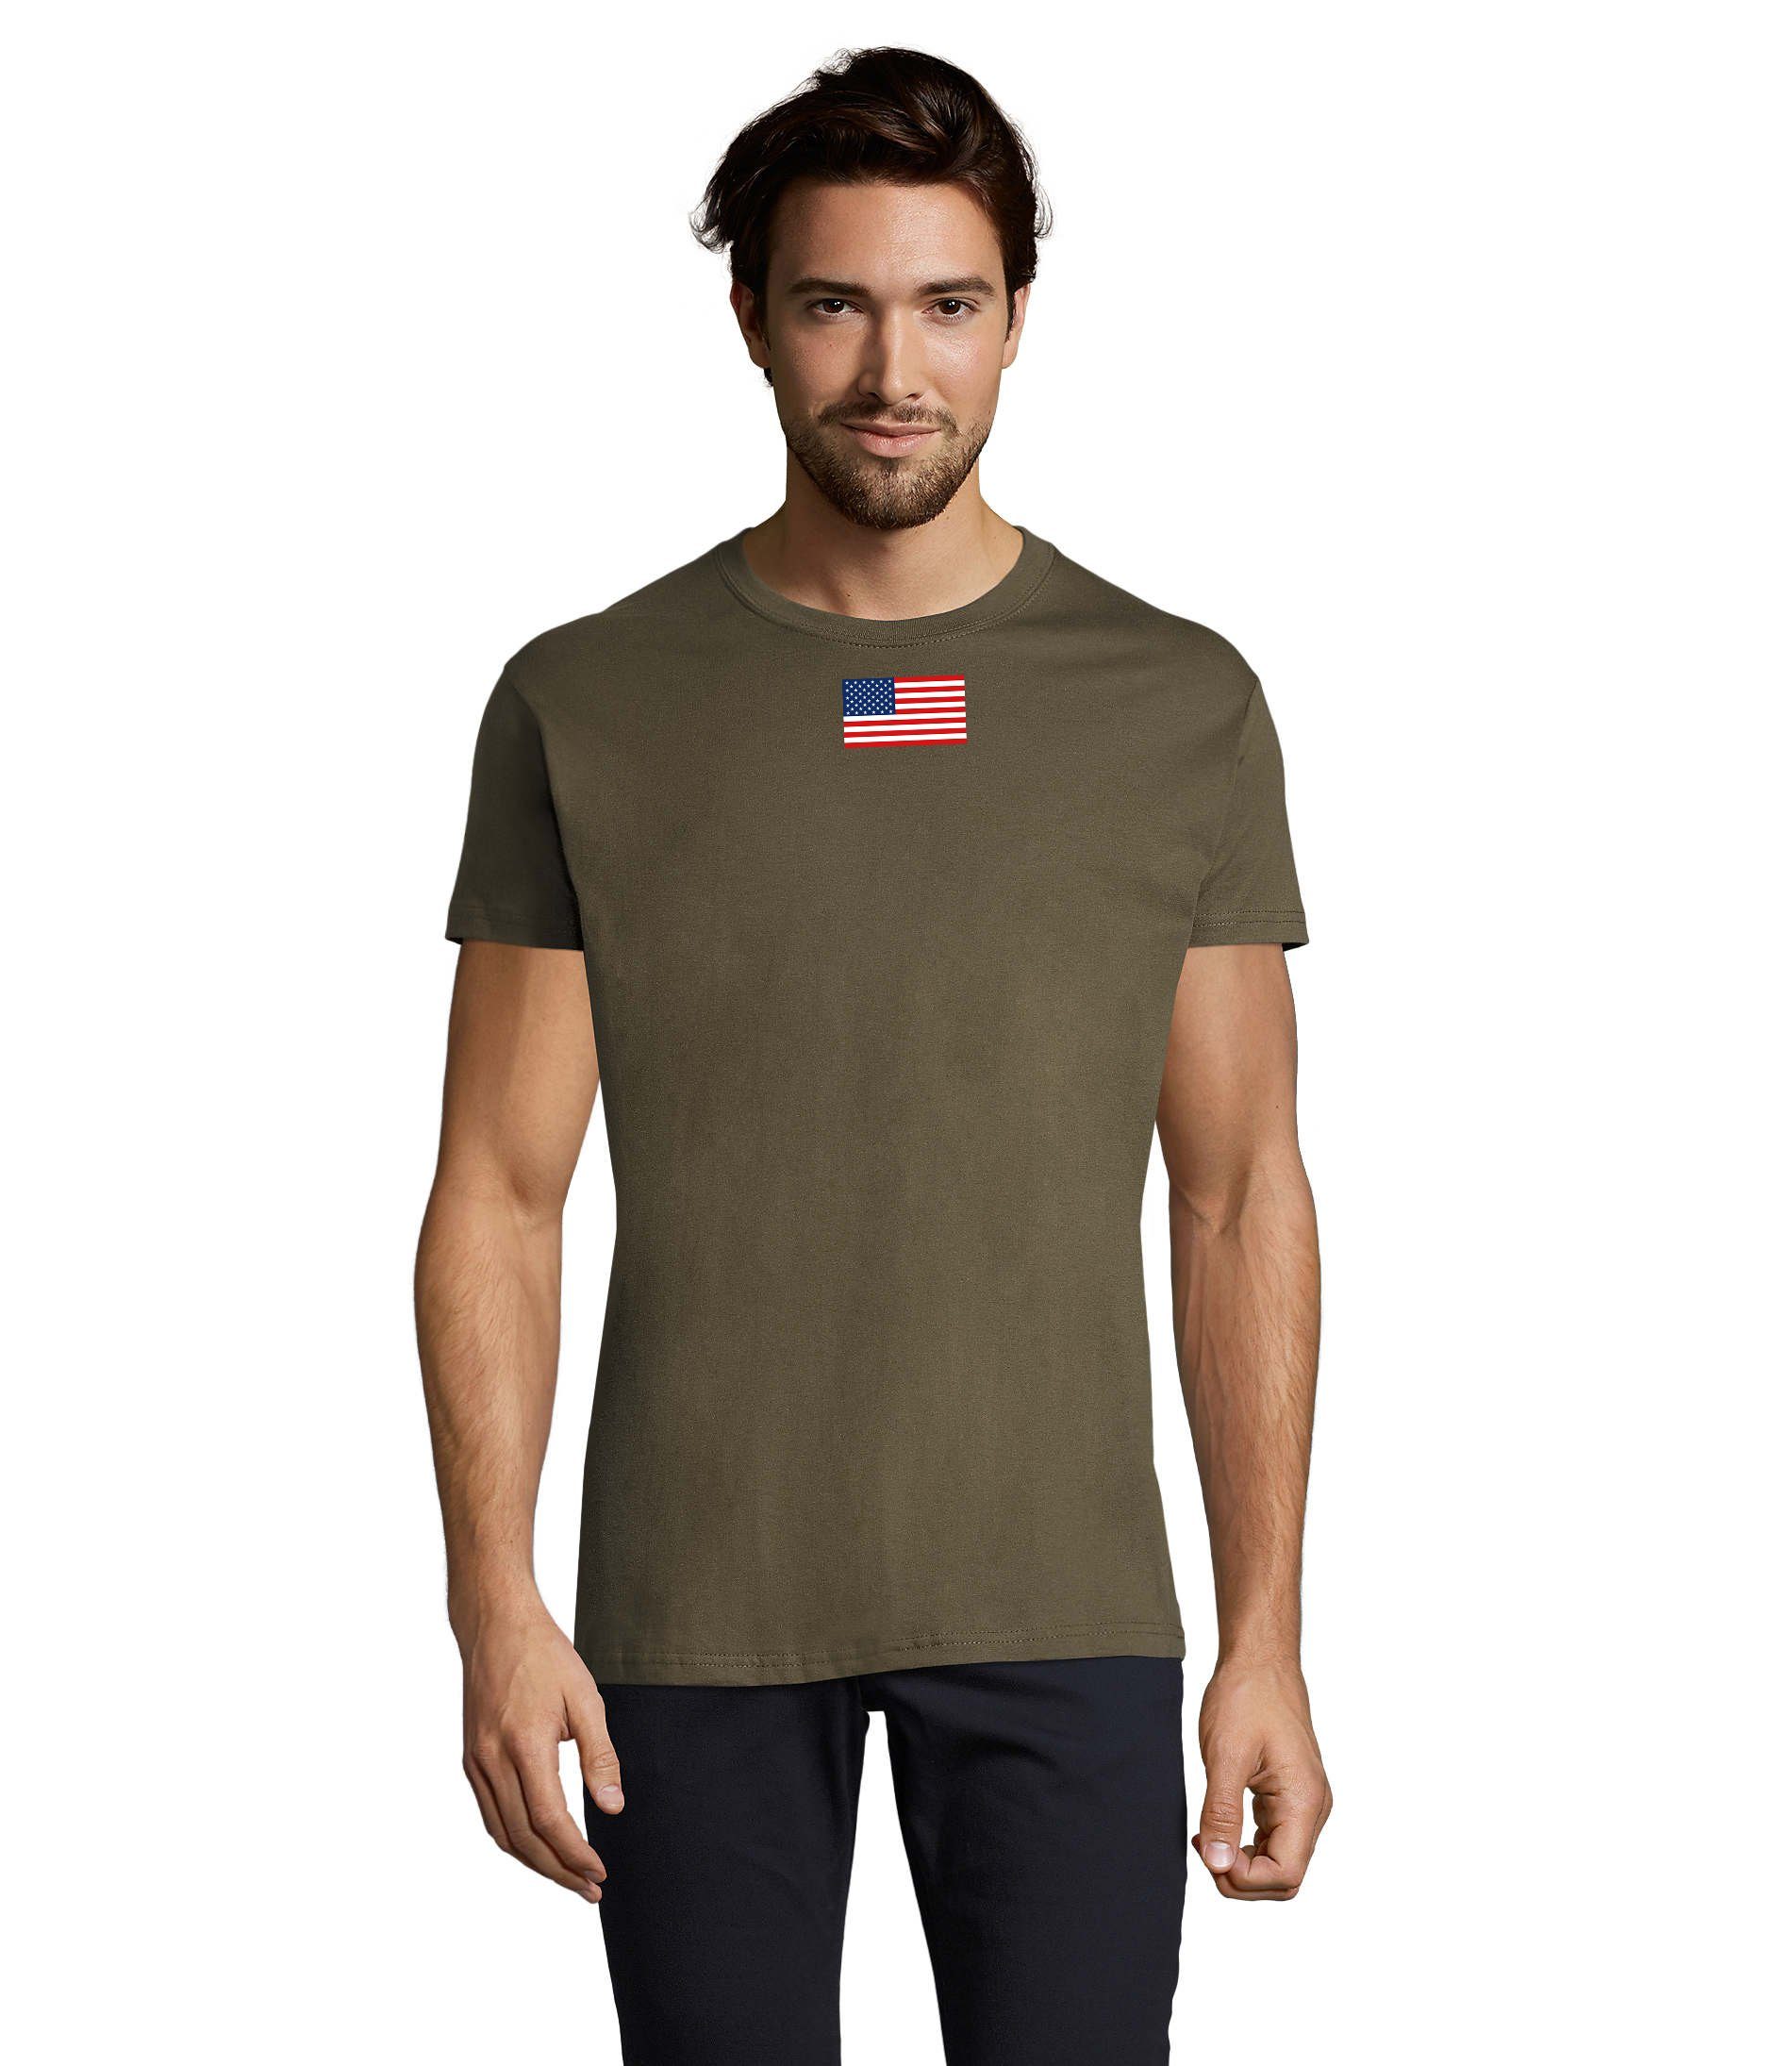 Blondie & Brownie T-Shirt Herren Nartion USA Vereinigte Staaten von Amerika Army Air Force